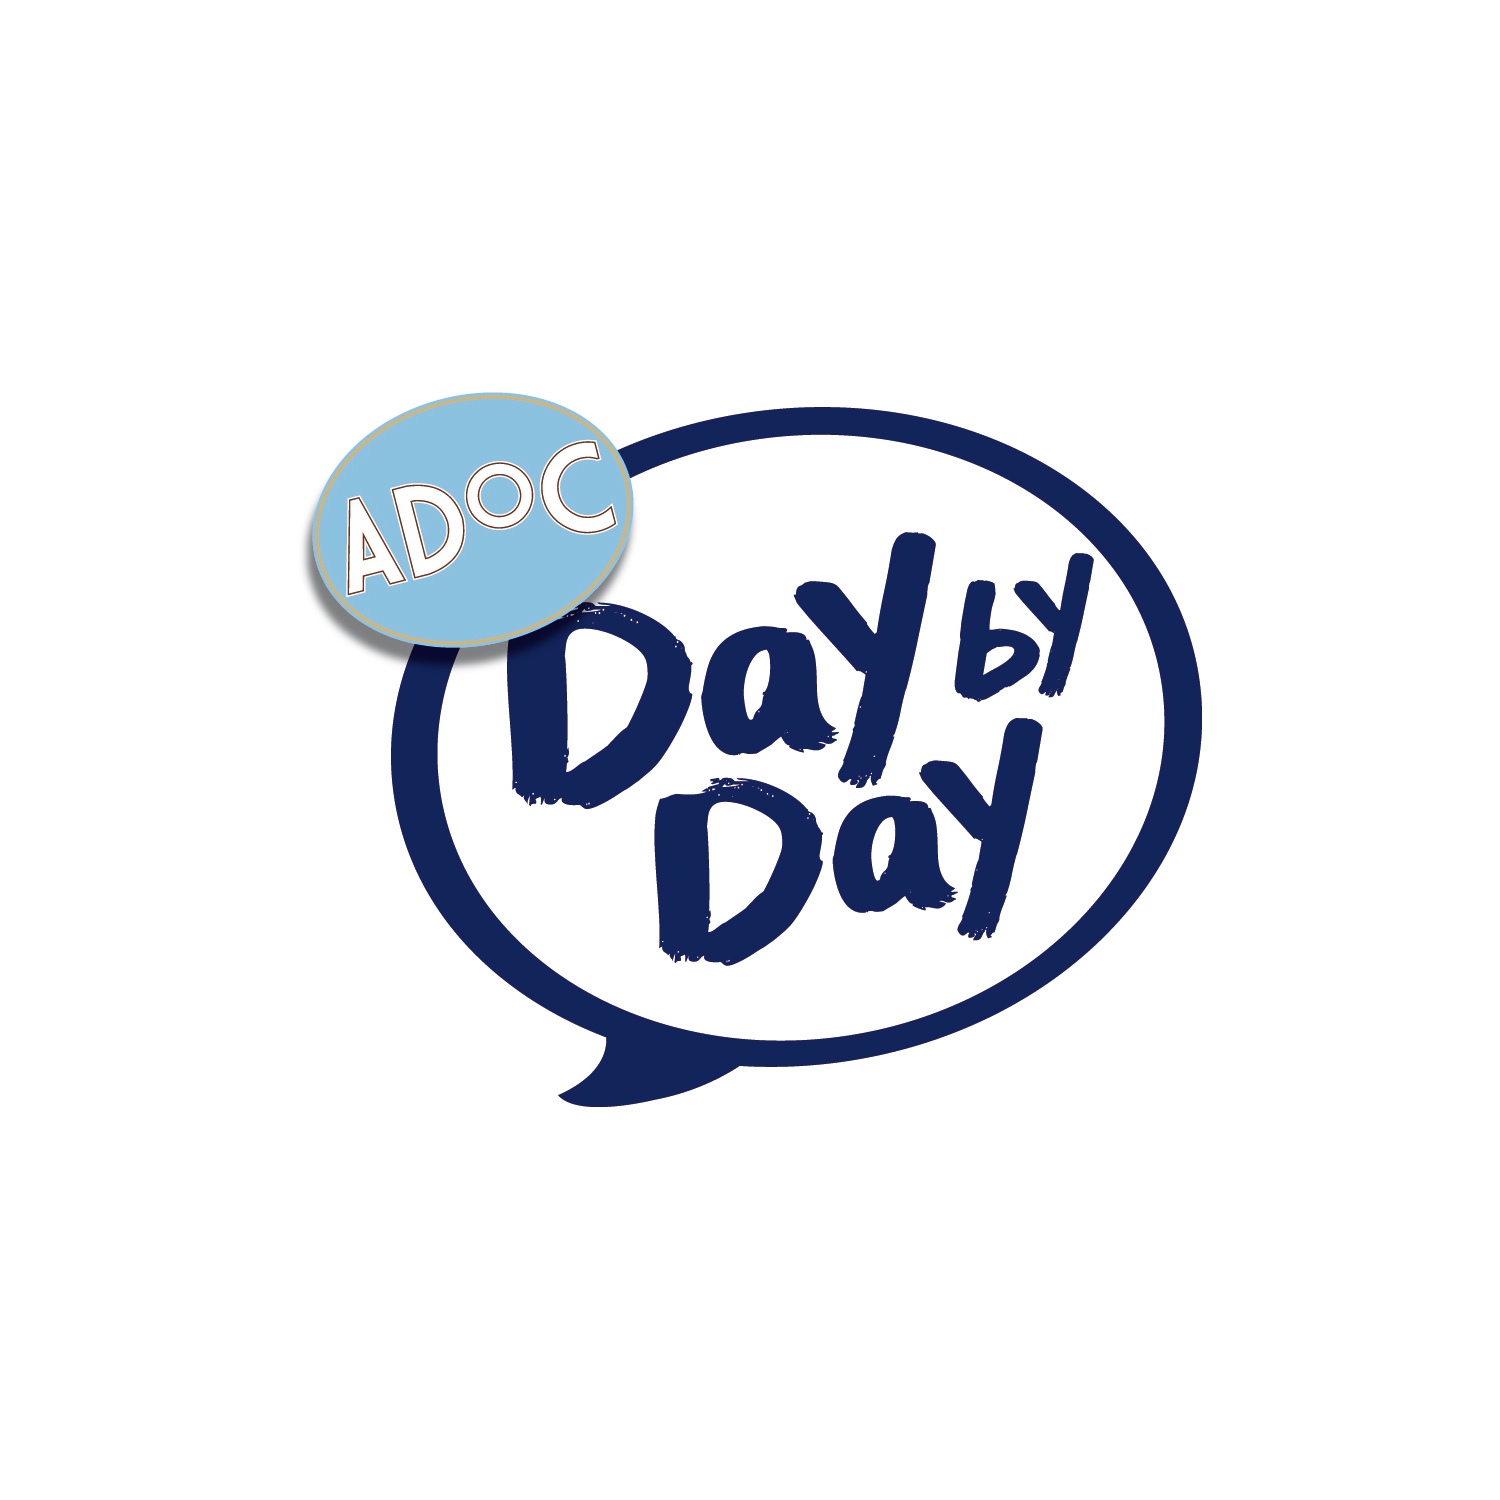 ADoC Day by Day: il buono di ogni giorno